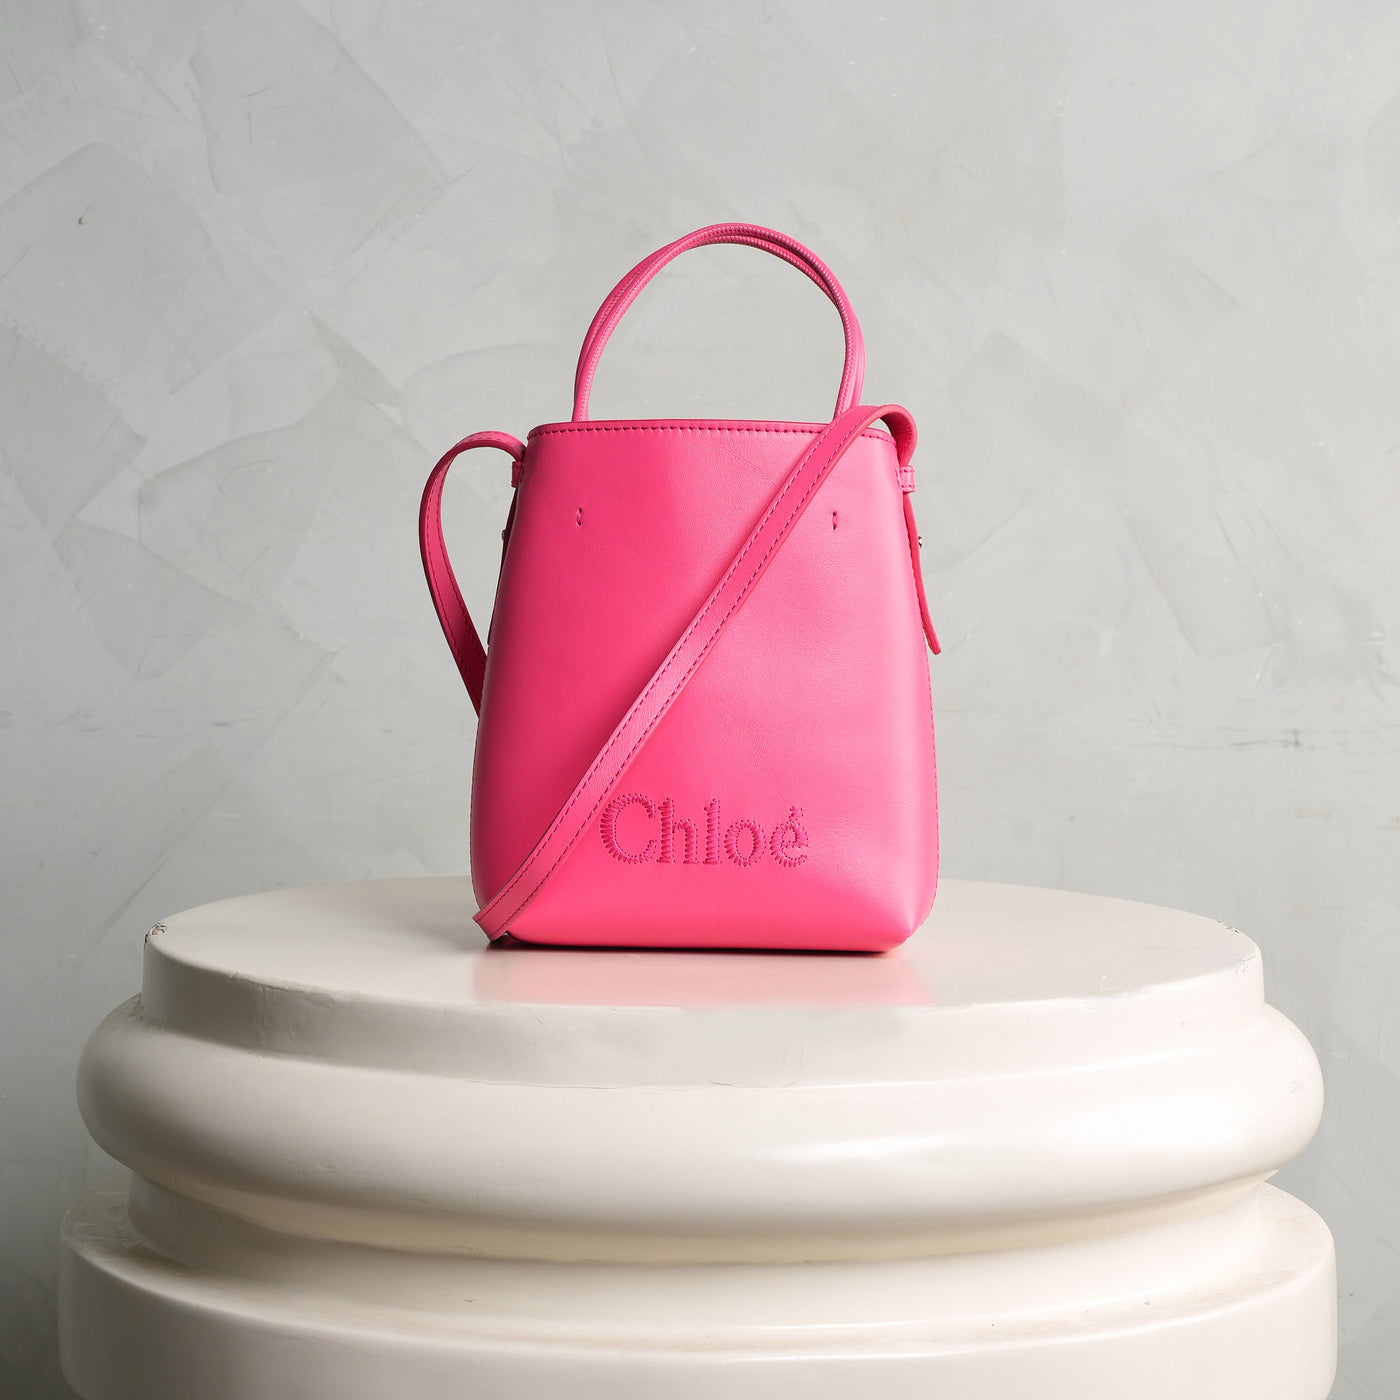 CHLOÉ pink leather sense micro tote bag